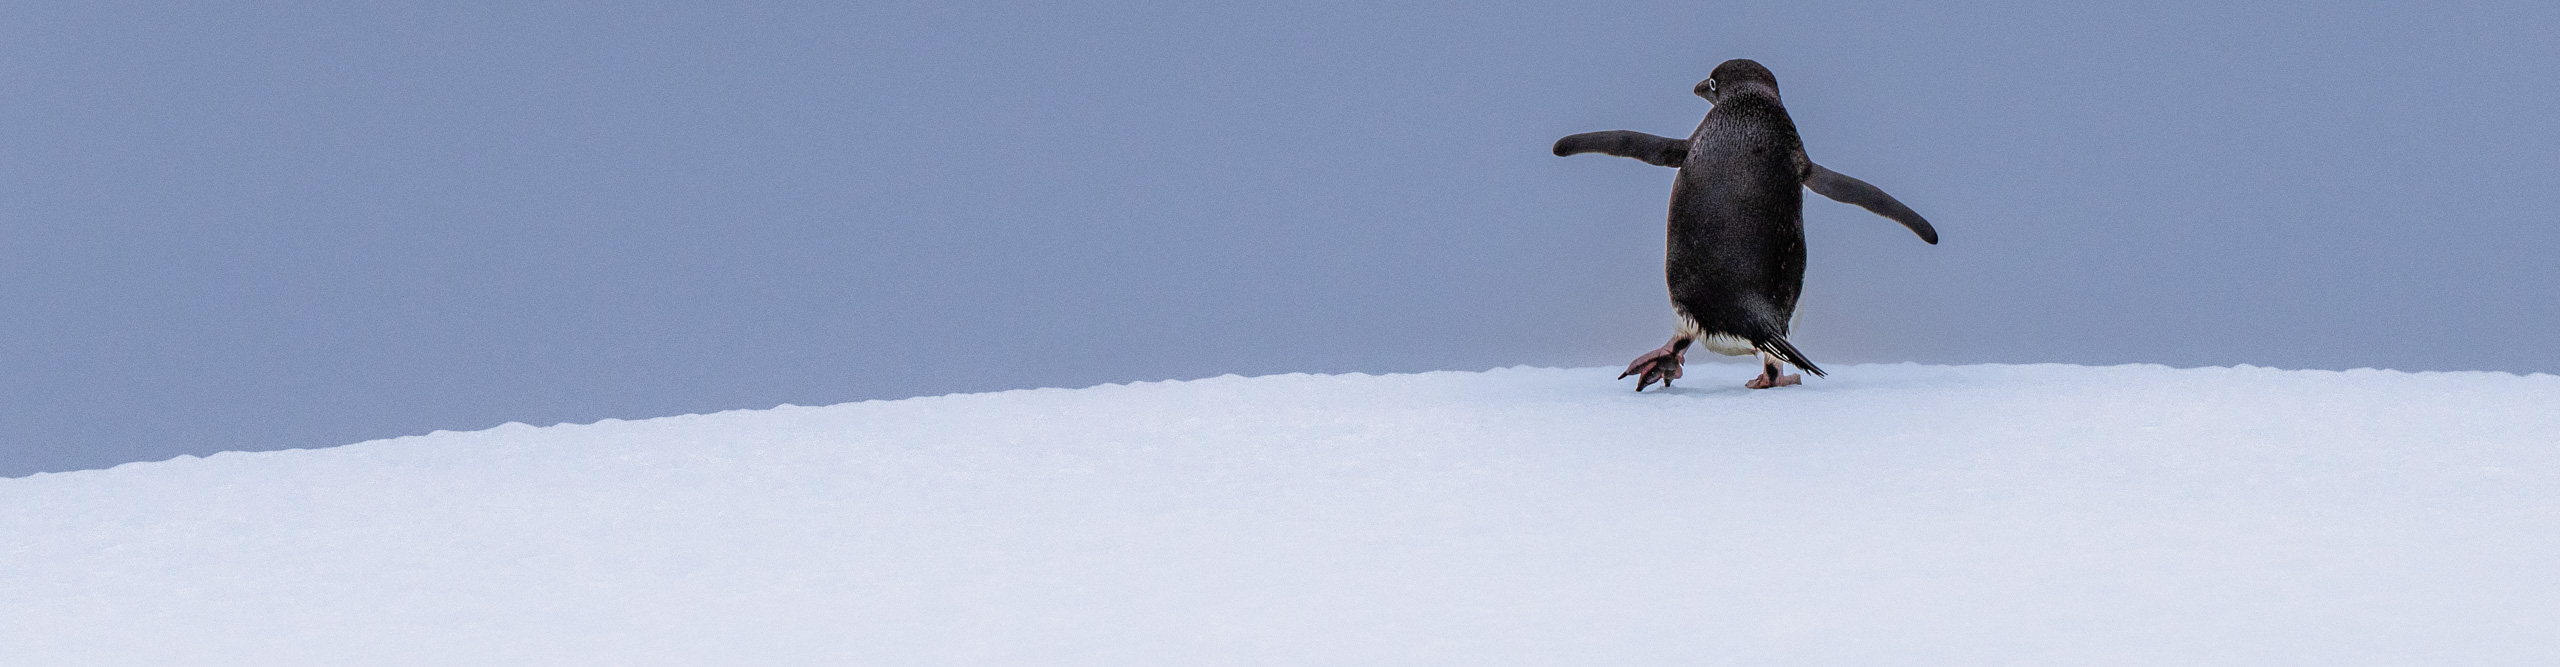 Penguin walking along ice in Antarctica